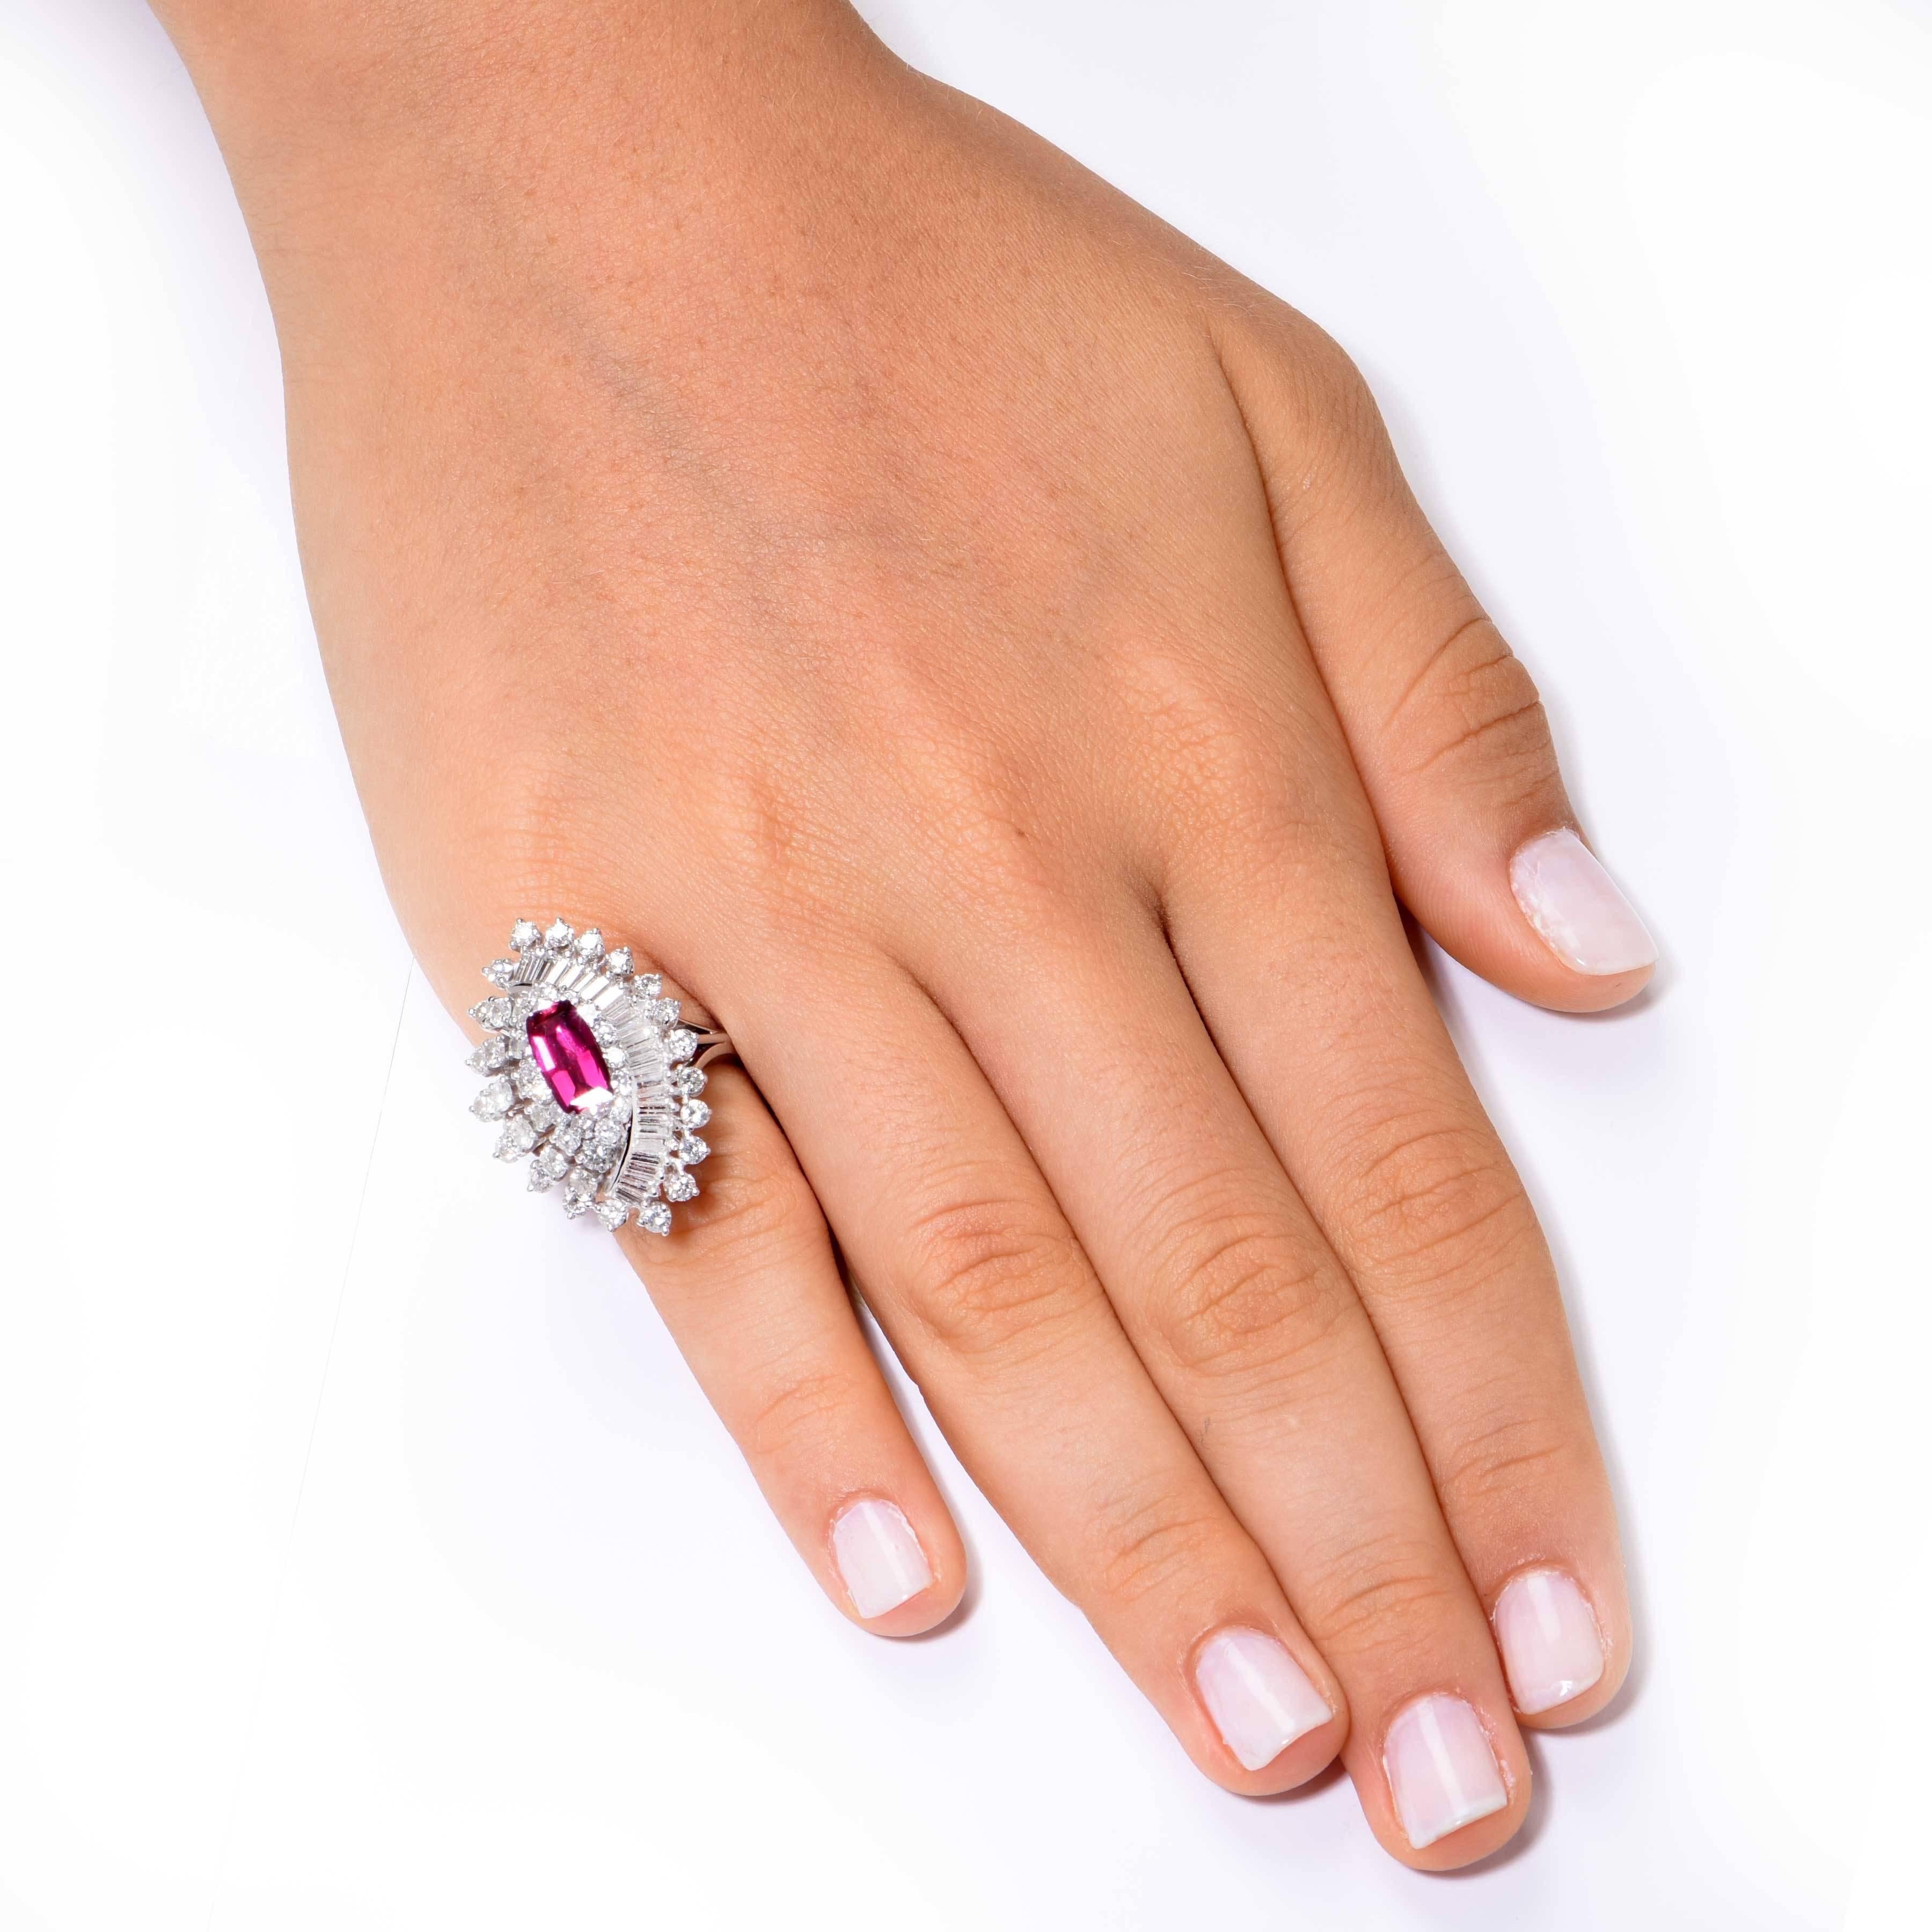 Ring aus rotem Spinell und Diamanten mit 48 runden und Baguette-Diamanten von etwa 3 Karat.  

Ringgröße ist 5 1/2. Kann angepasst werden - keine Gebühr. 
Metall Typ: 14 Kt Weißgold (gestempelt und/oder getestet)
Metall Gewicht: 11,4 Gramm